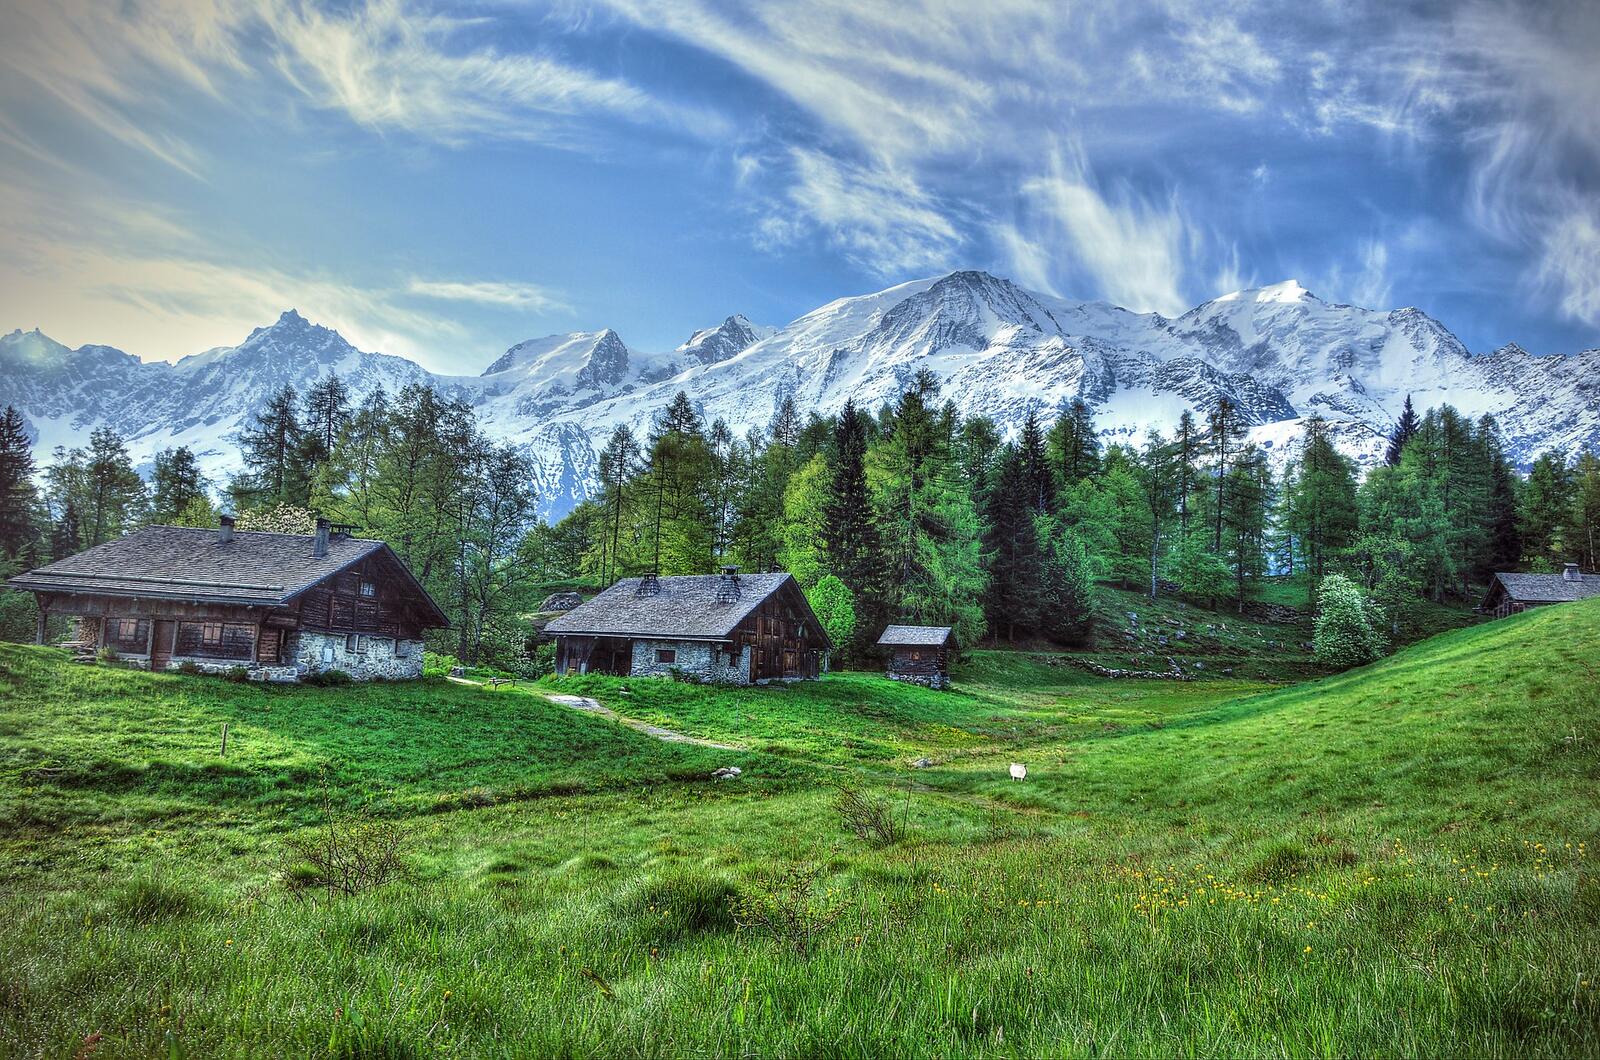 Обои Alpine wonderland Альпы Франция на рабочий стол